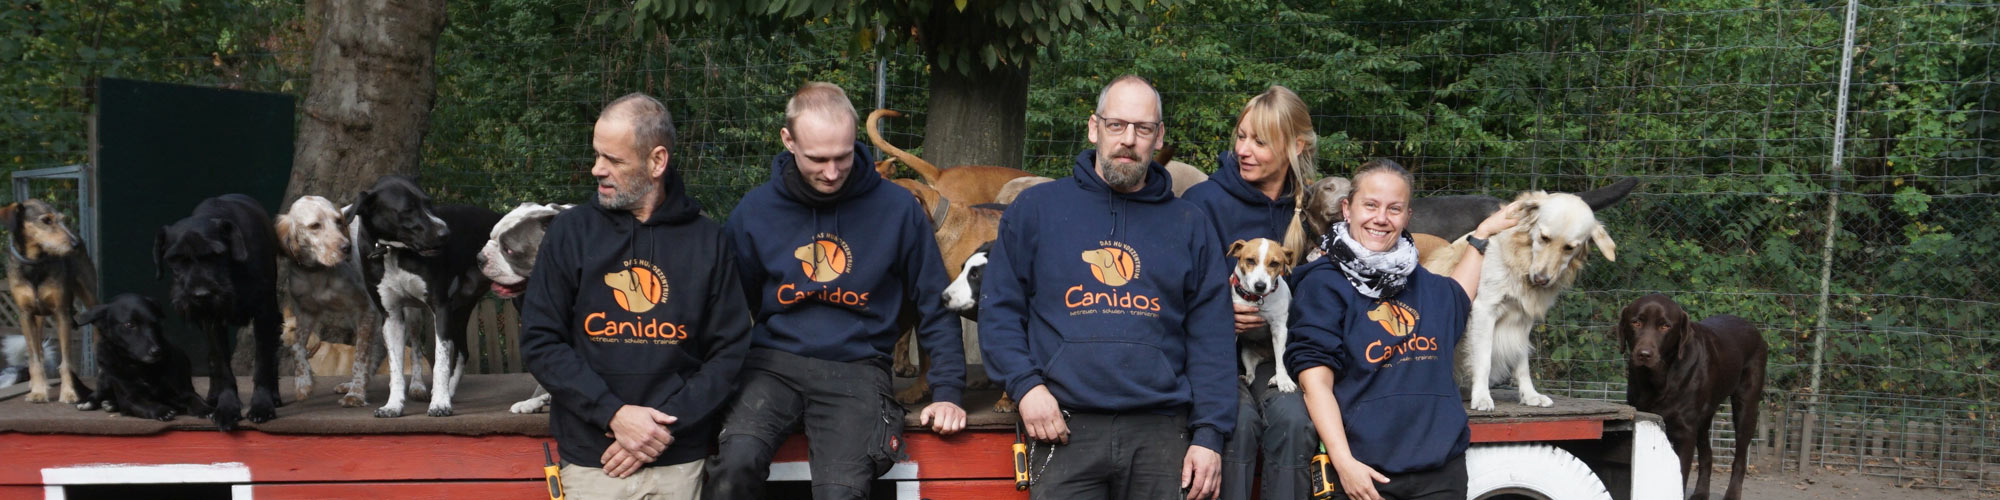 Unser Team im Hundezentrum Canidos in Gelsenkirchen und Dortmund